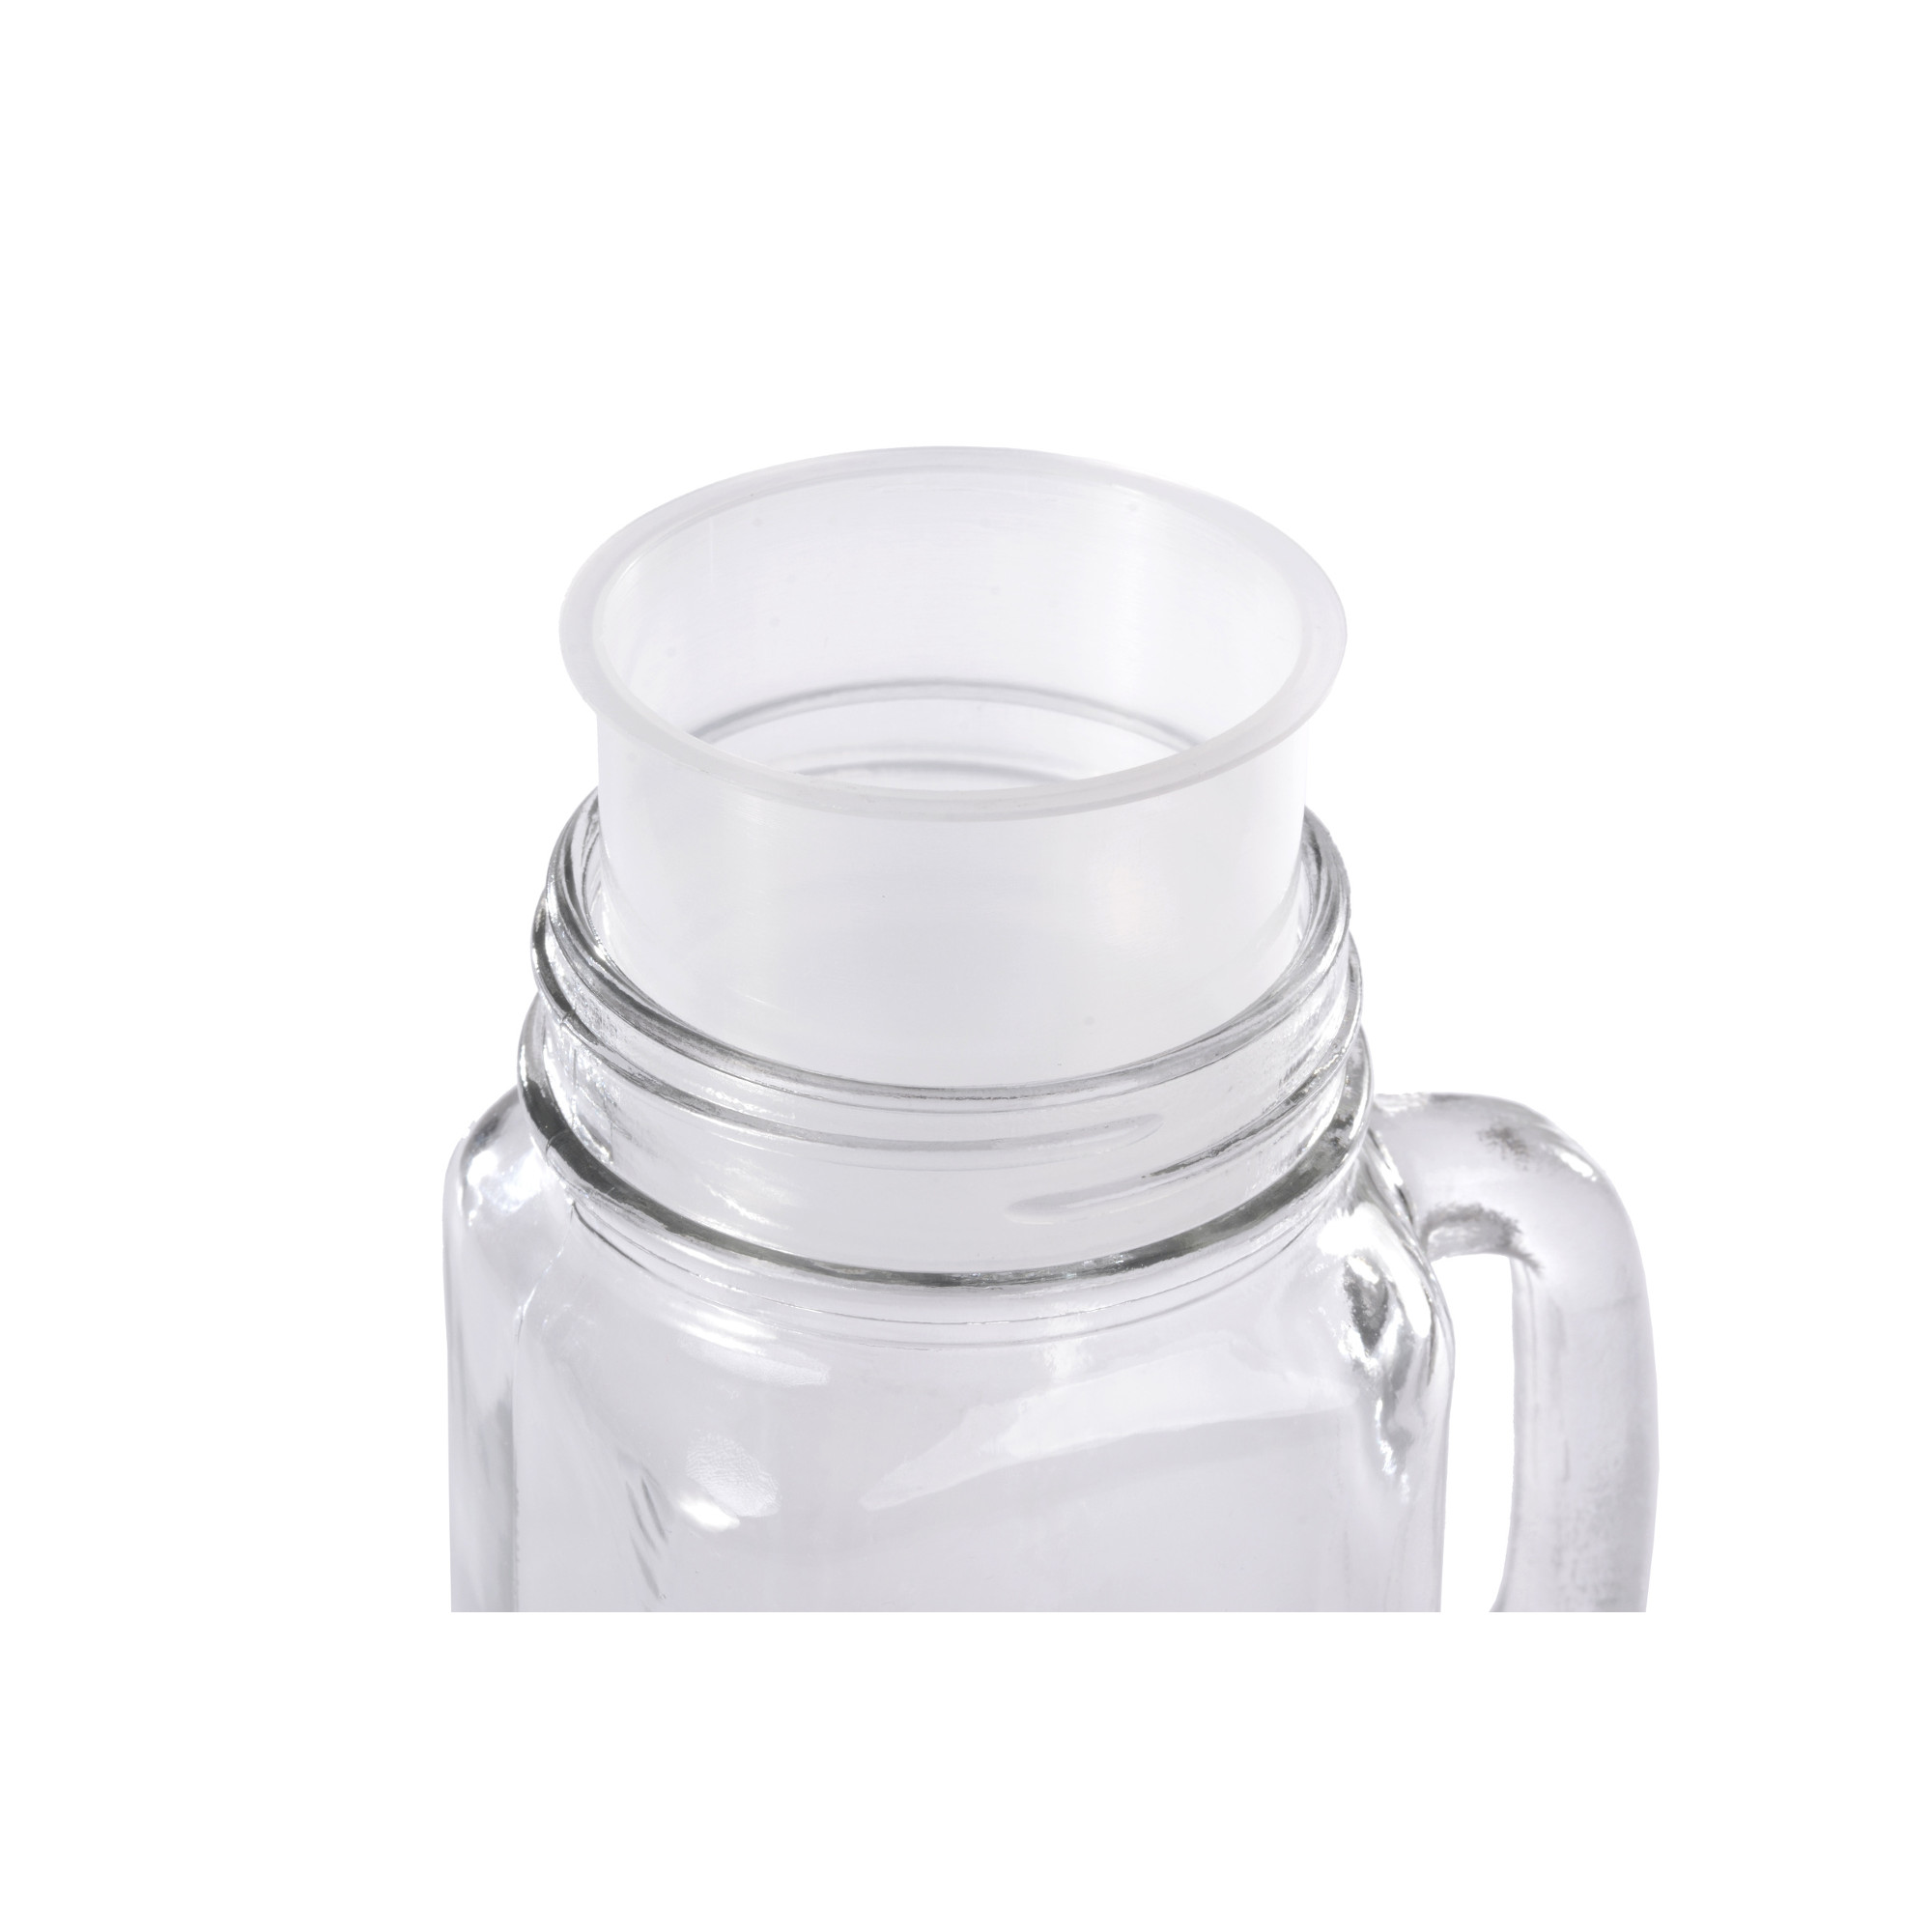 Henkel-Trinkglas mit Deckel und Strohhalm 4 Stück inkl. 6 Kunststoffbechern